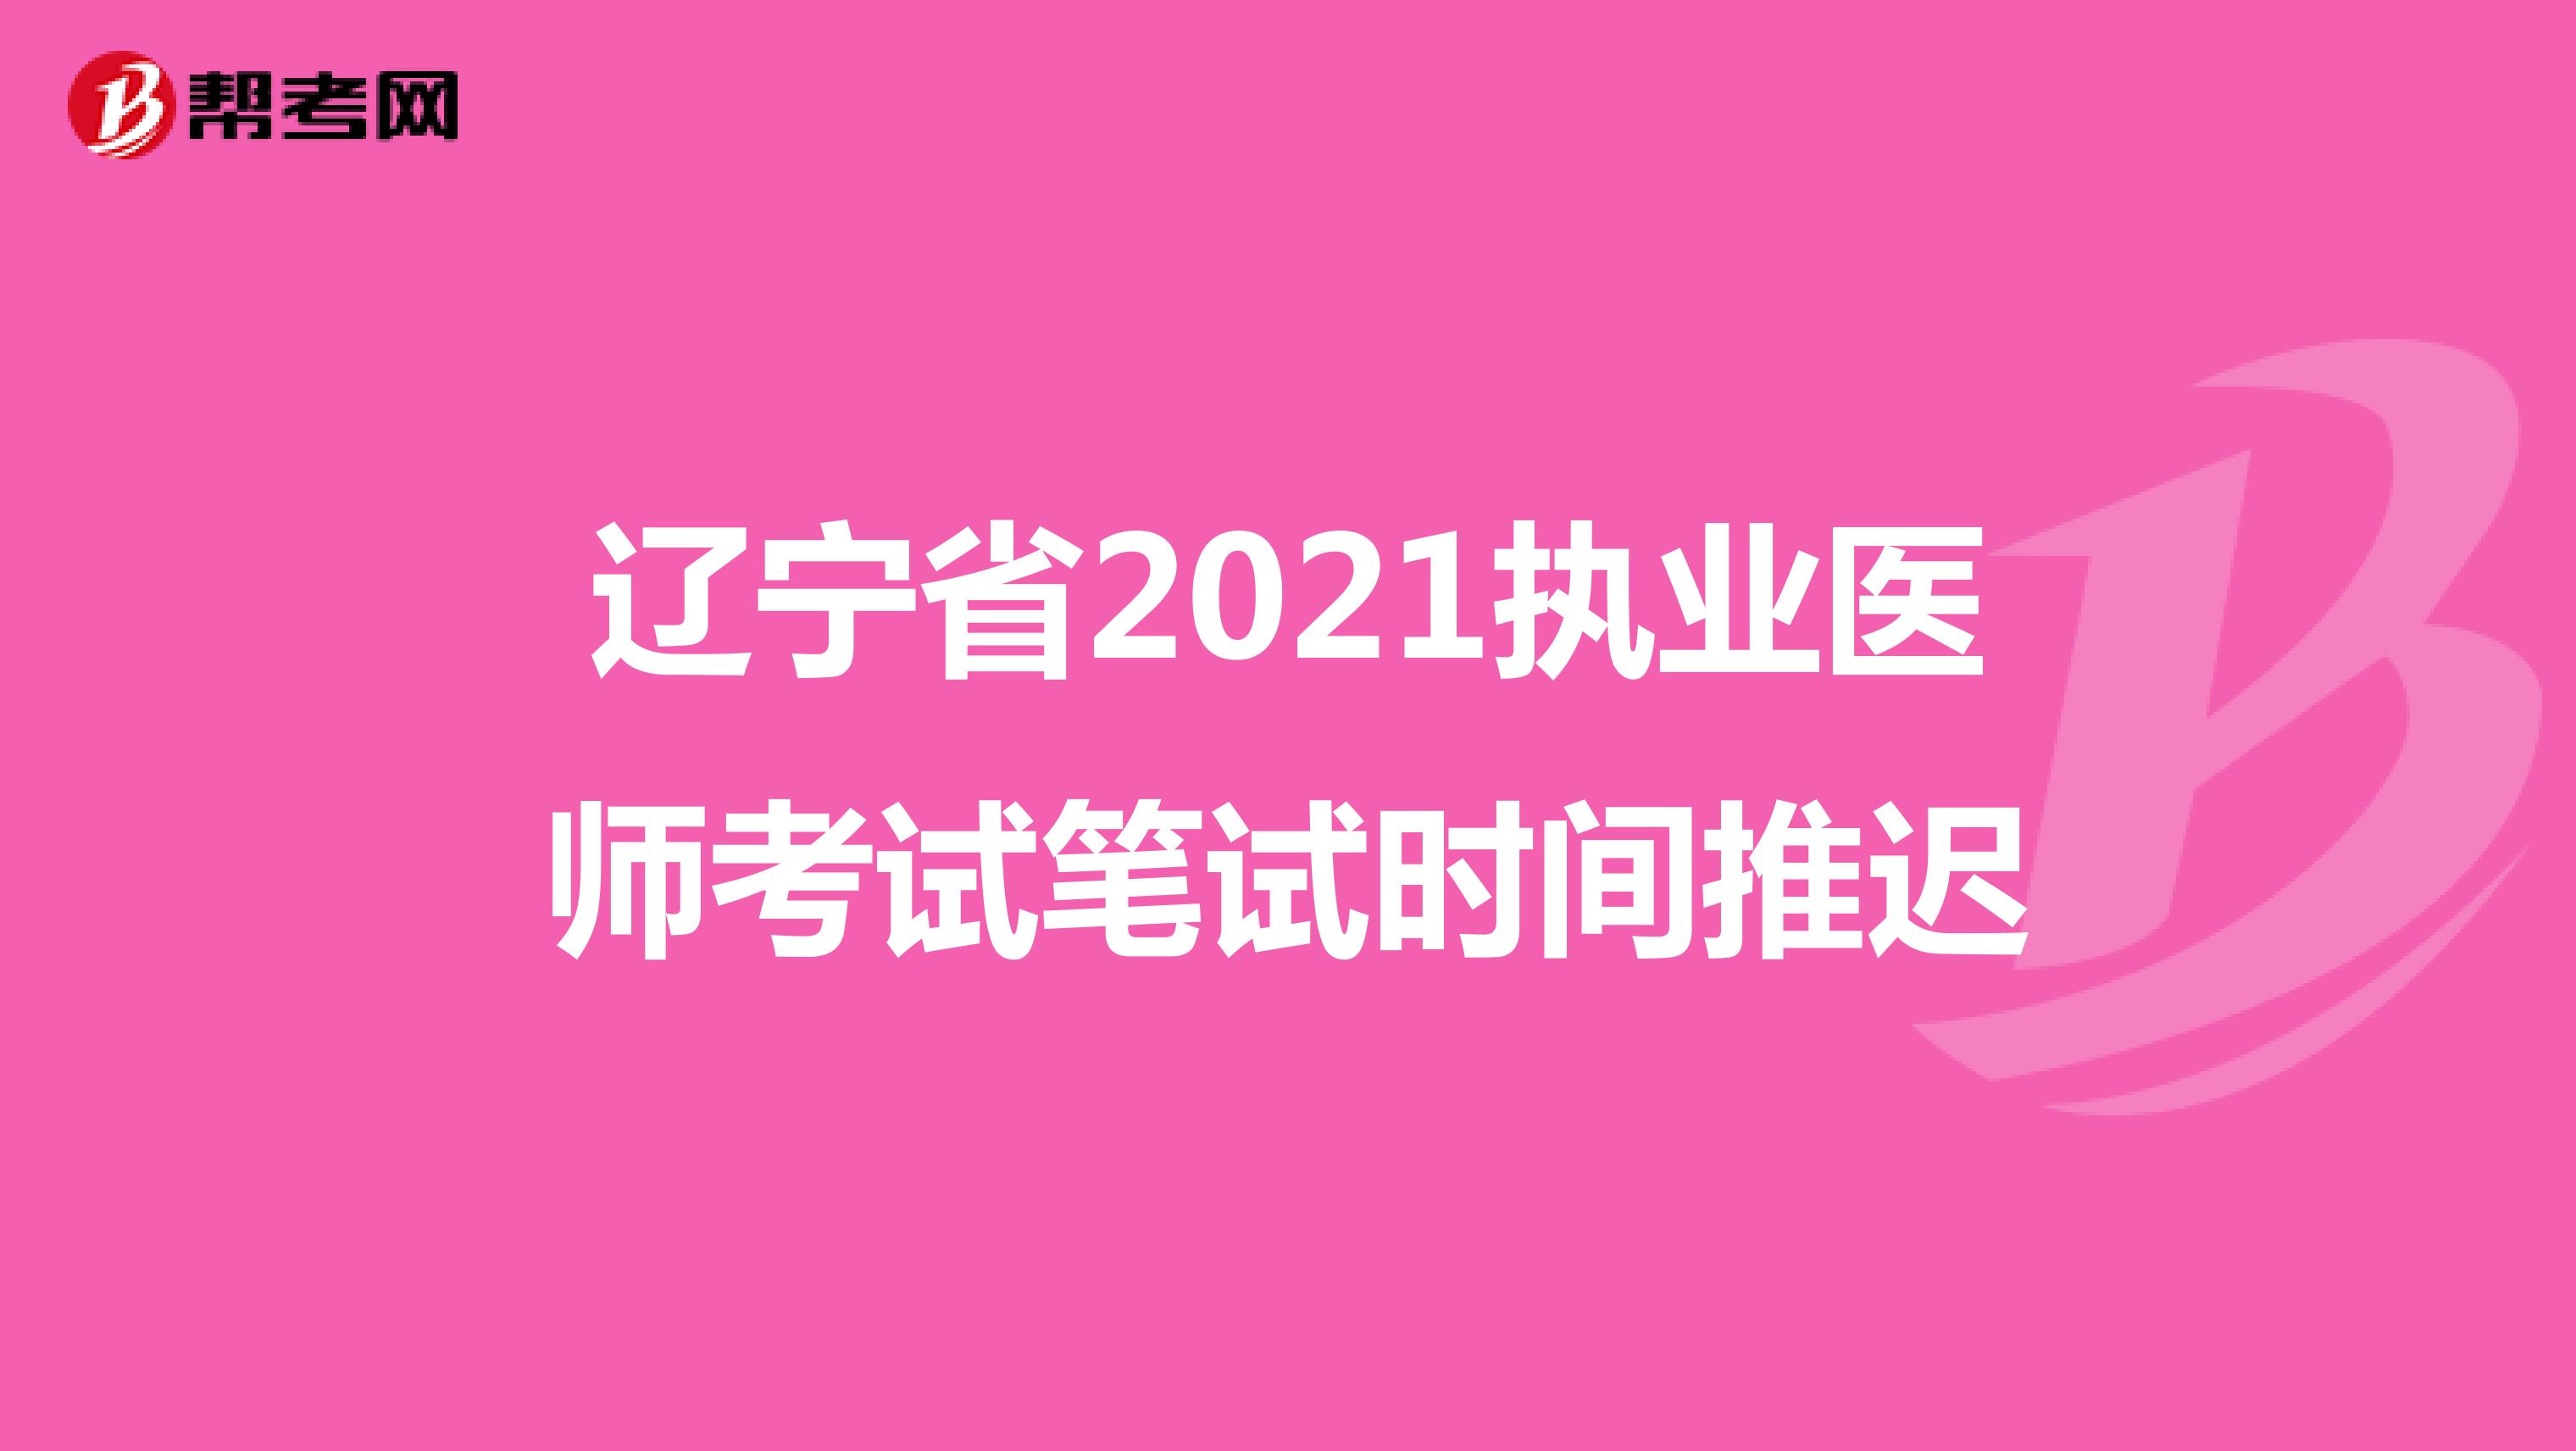 吉林省2021执业医师考试笔试时间推迟